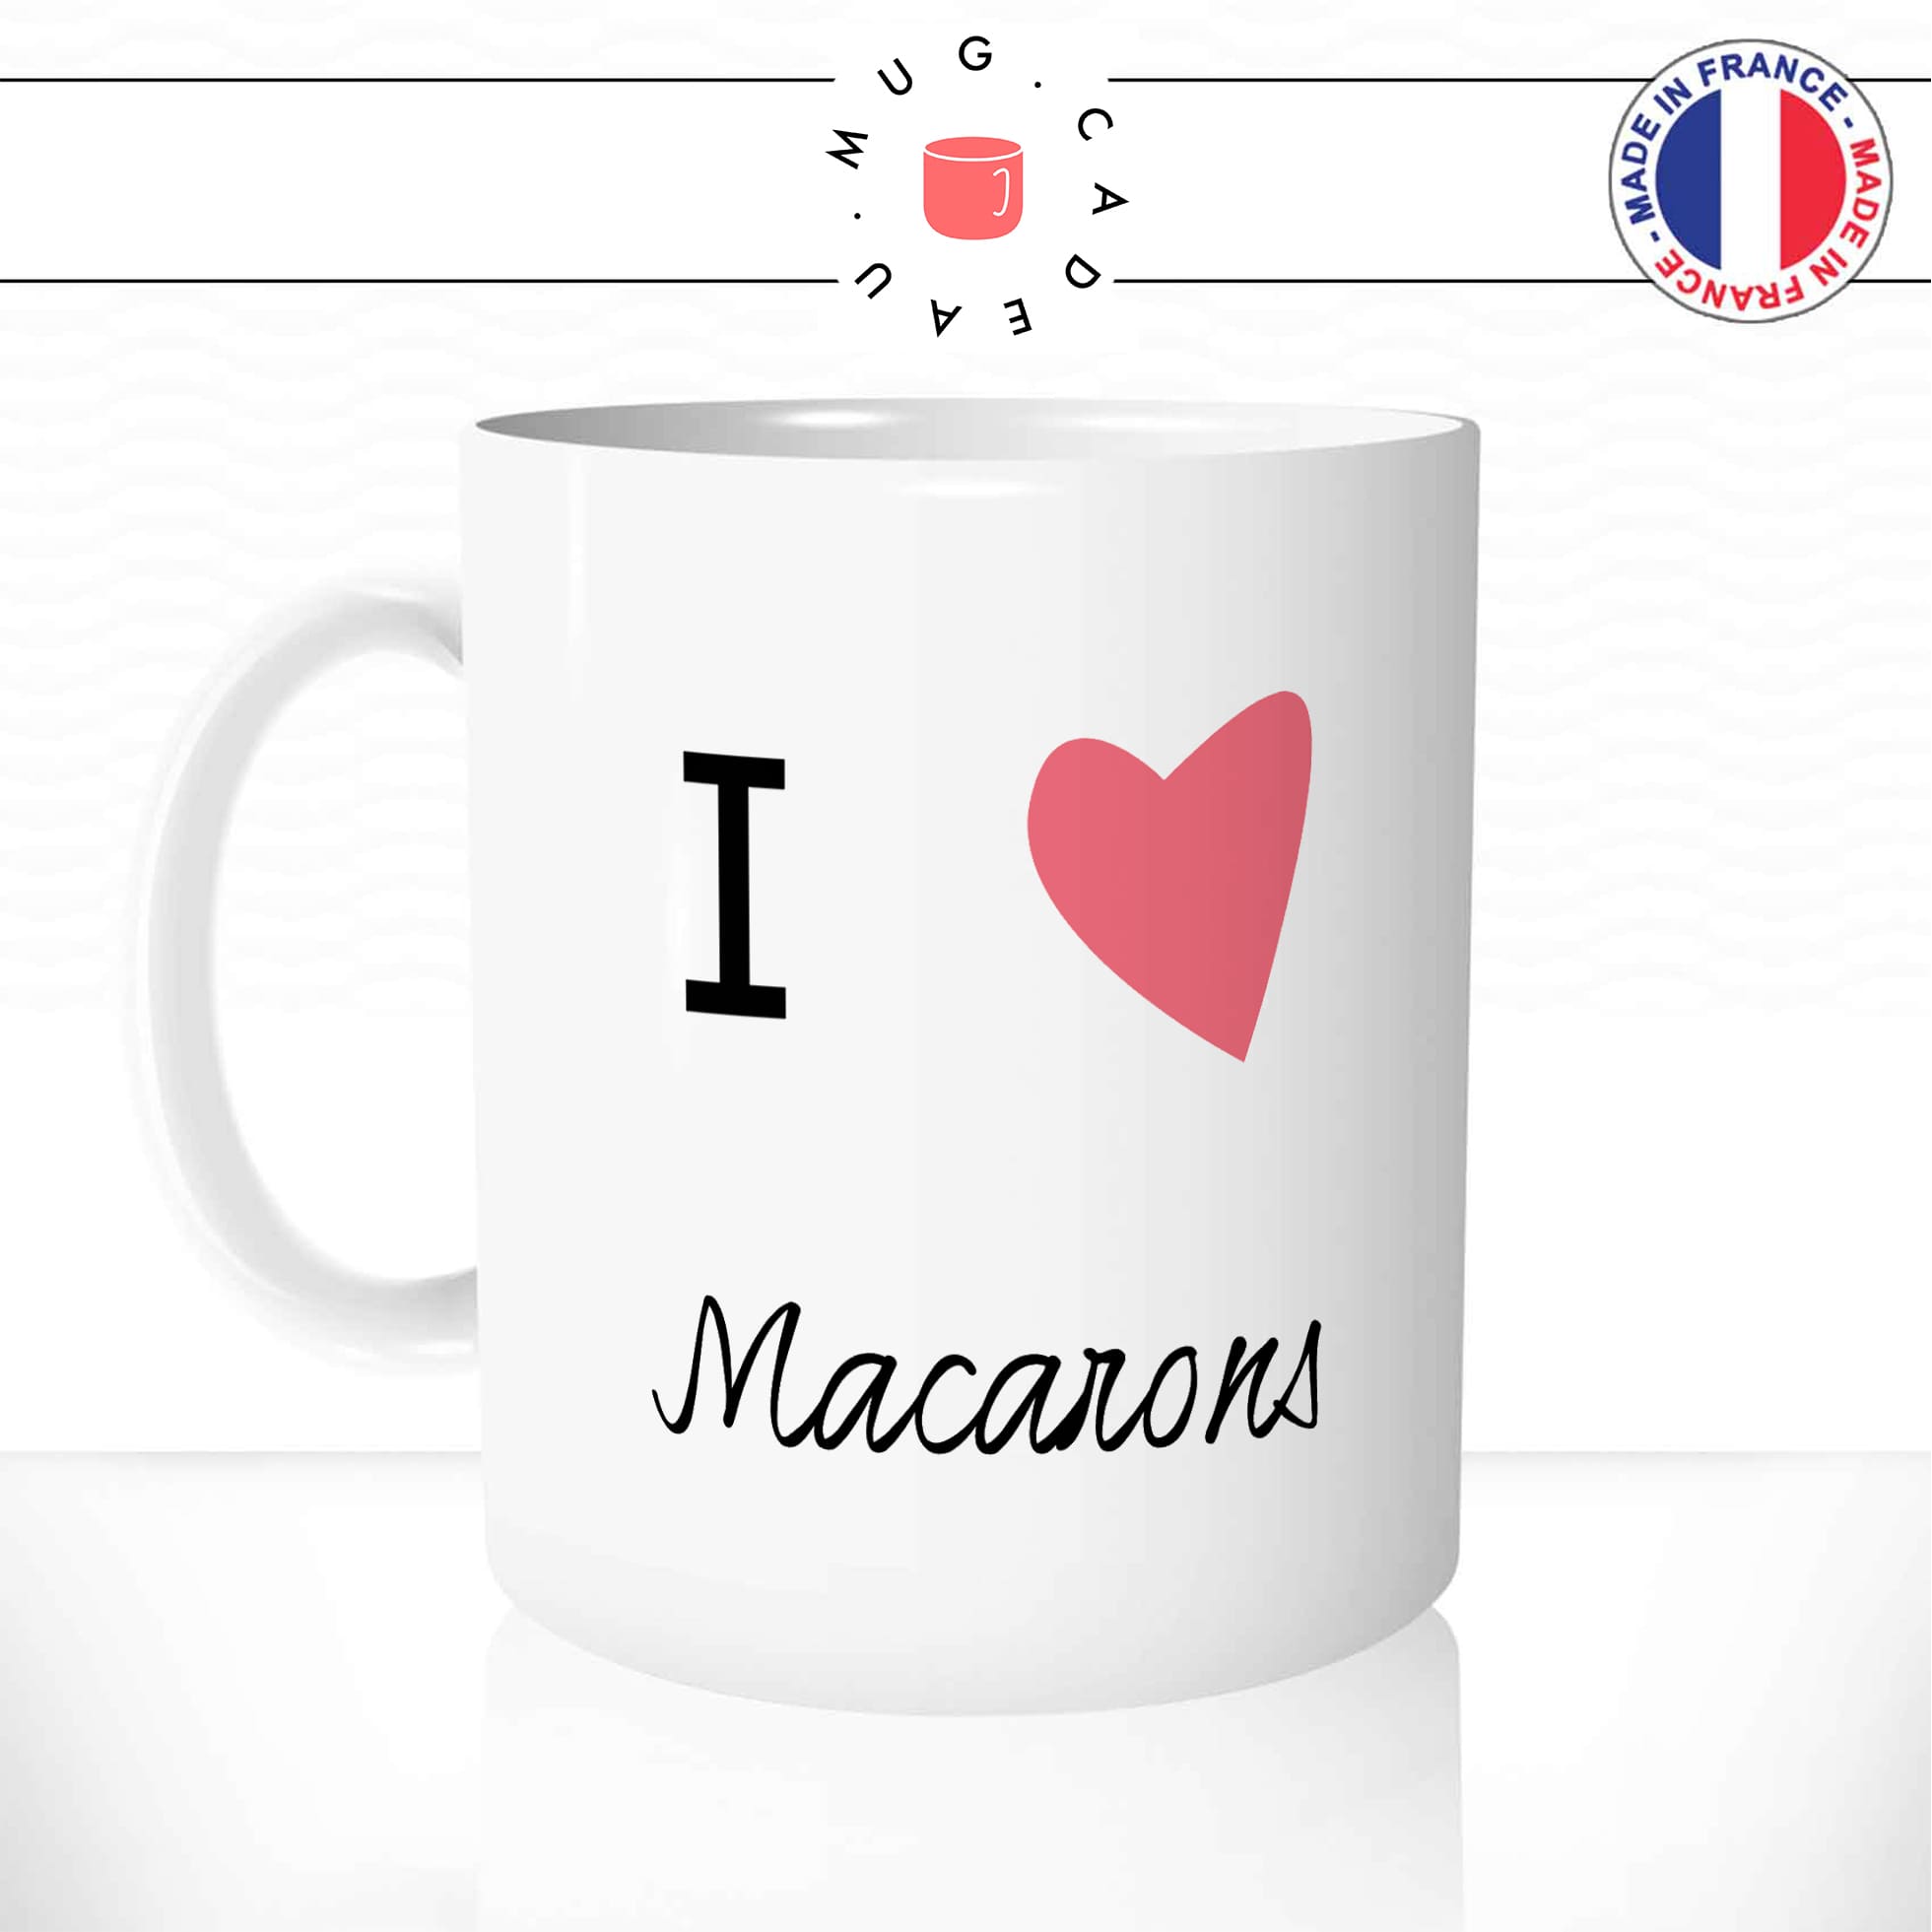 mug-tasse-blanc-unique-i-love-macarons-dessert-gateau-cuisine-francaise-plat-france-homme-femme-fun-cool-idée-cadeau-original